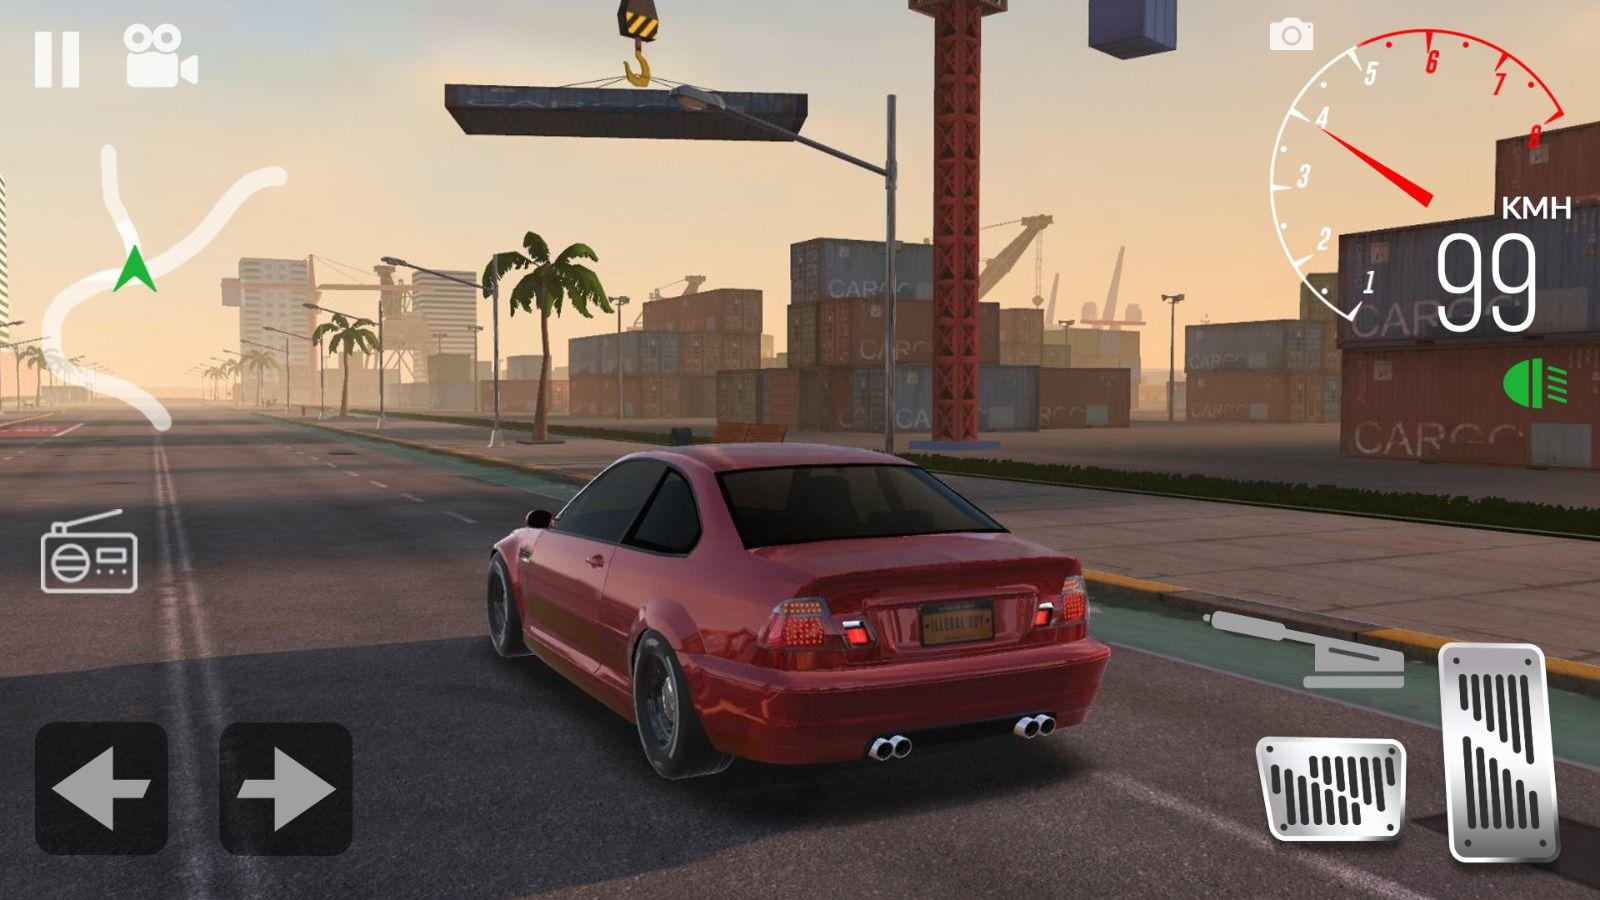 Screenshot 1 of Drive Club: Simulator Mobil & Game Parkir Online 1.7.64